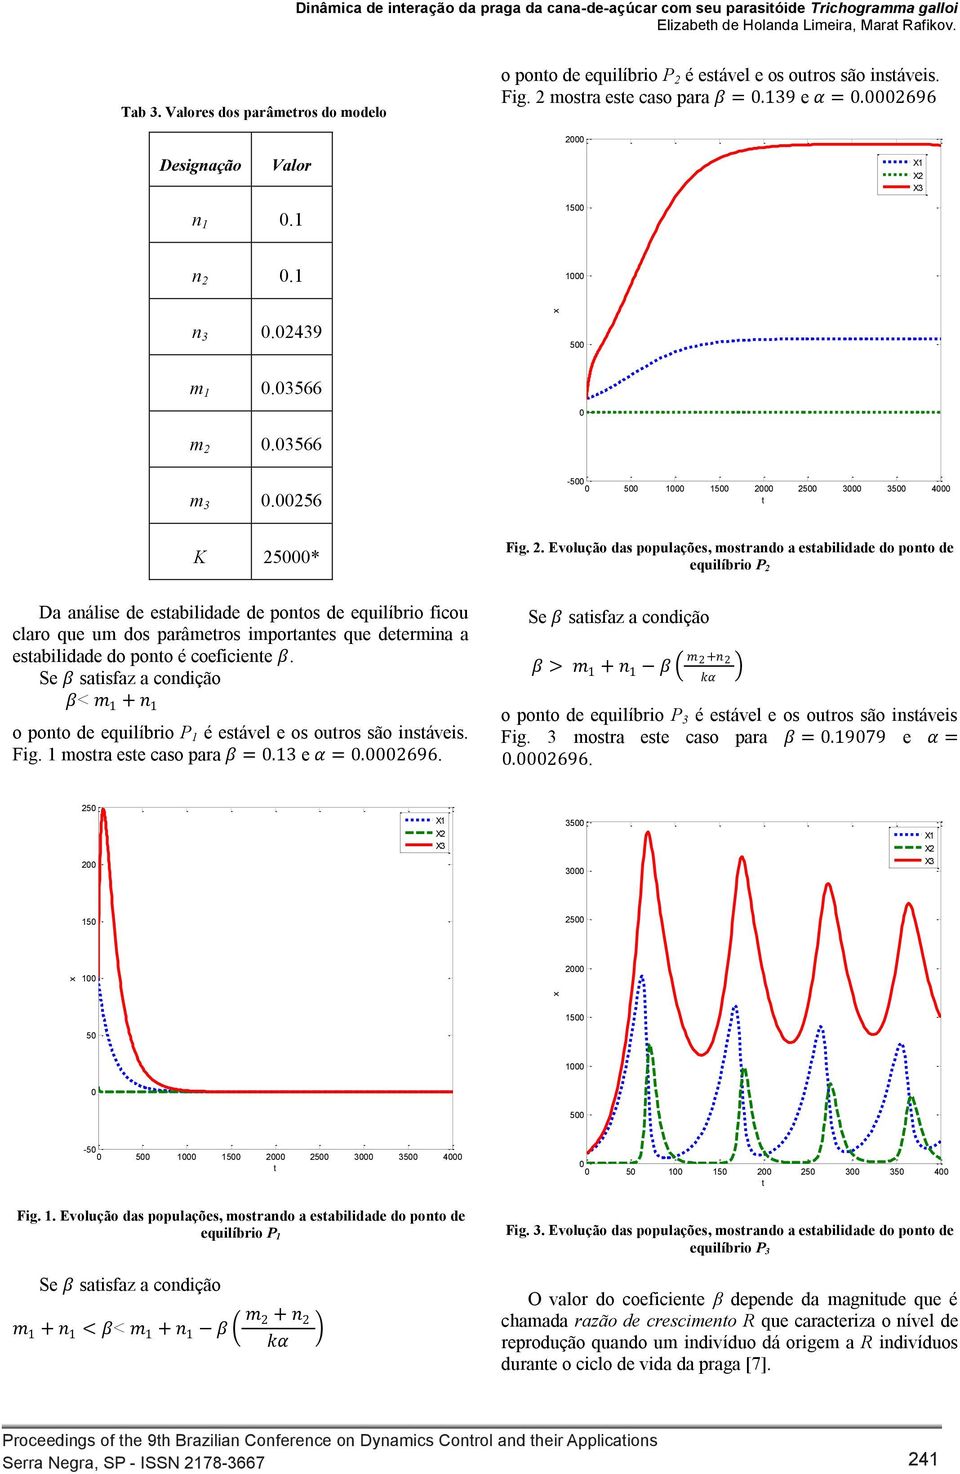 256-5 5 1 15 2 25 3 35 4 K 25* Da análise de esabilidade de ponos de equilíbrio ficou claro que um dos parâmeros imporanes que deermina a esabilidade do pono é coeficiene ββ.